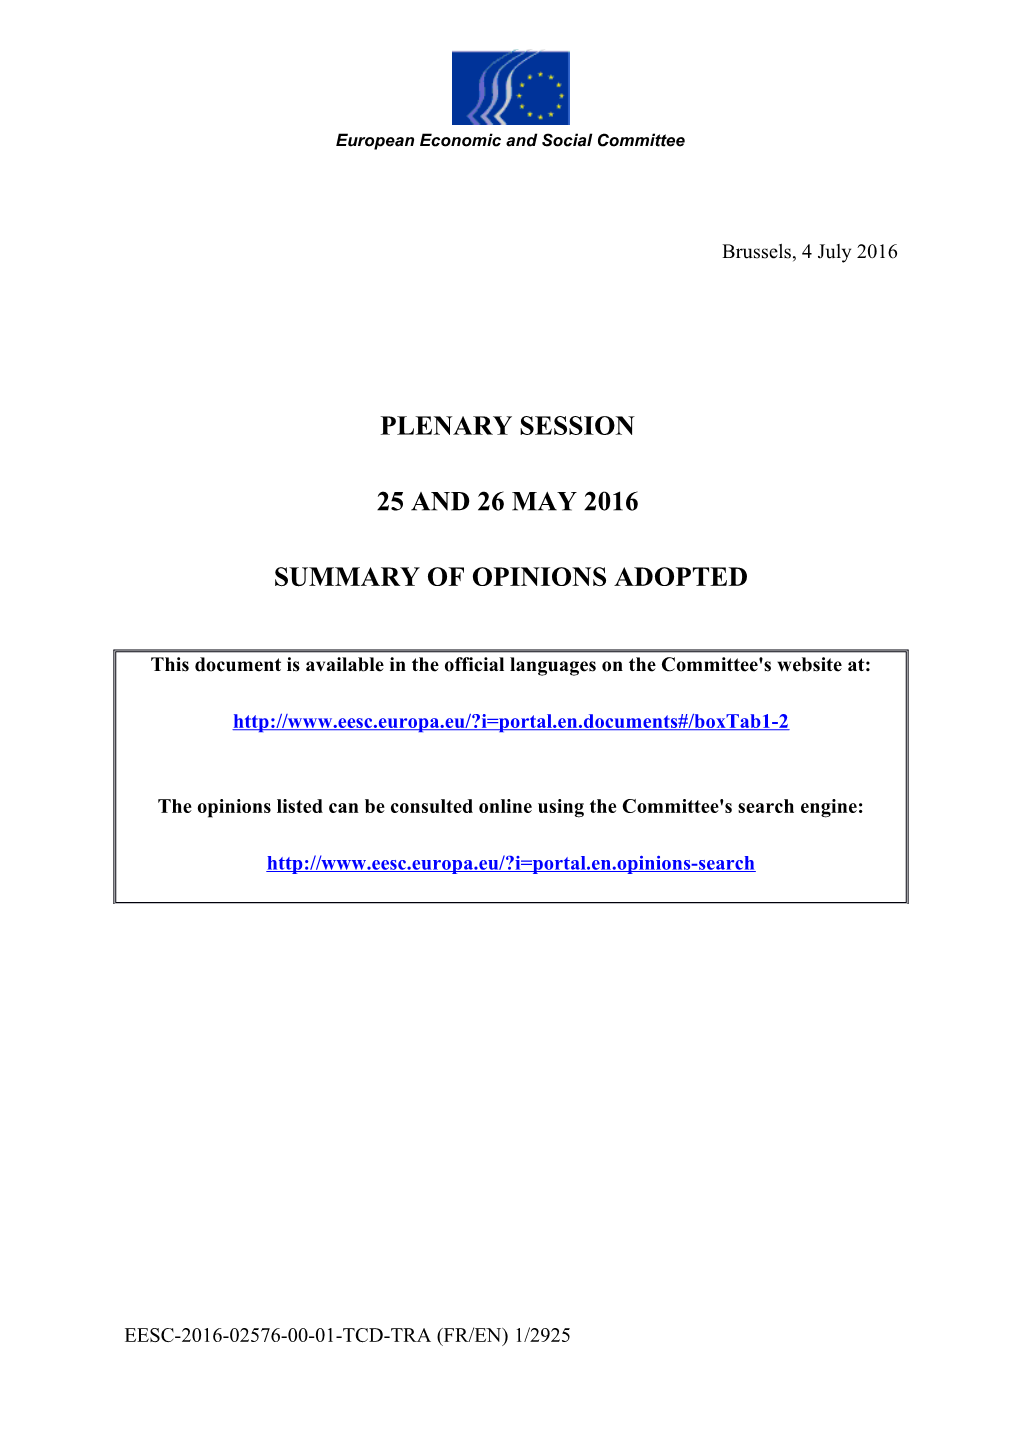 Summary - 517Th Plenary Session - 25 and 26 May 2016